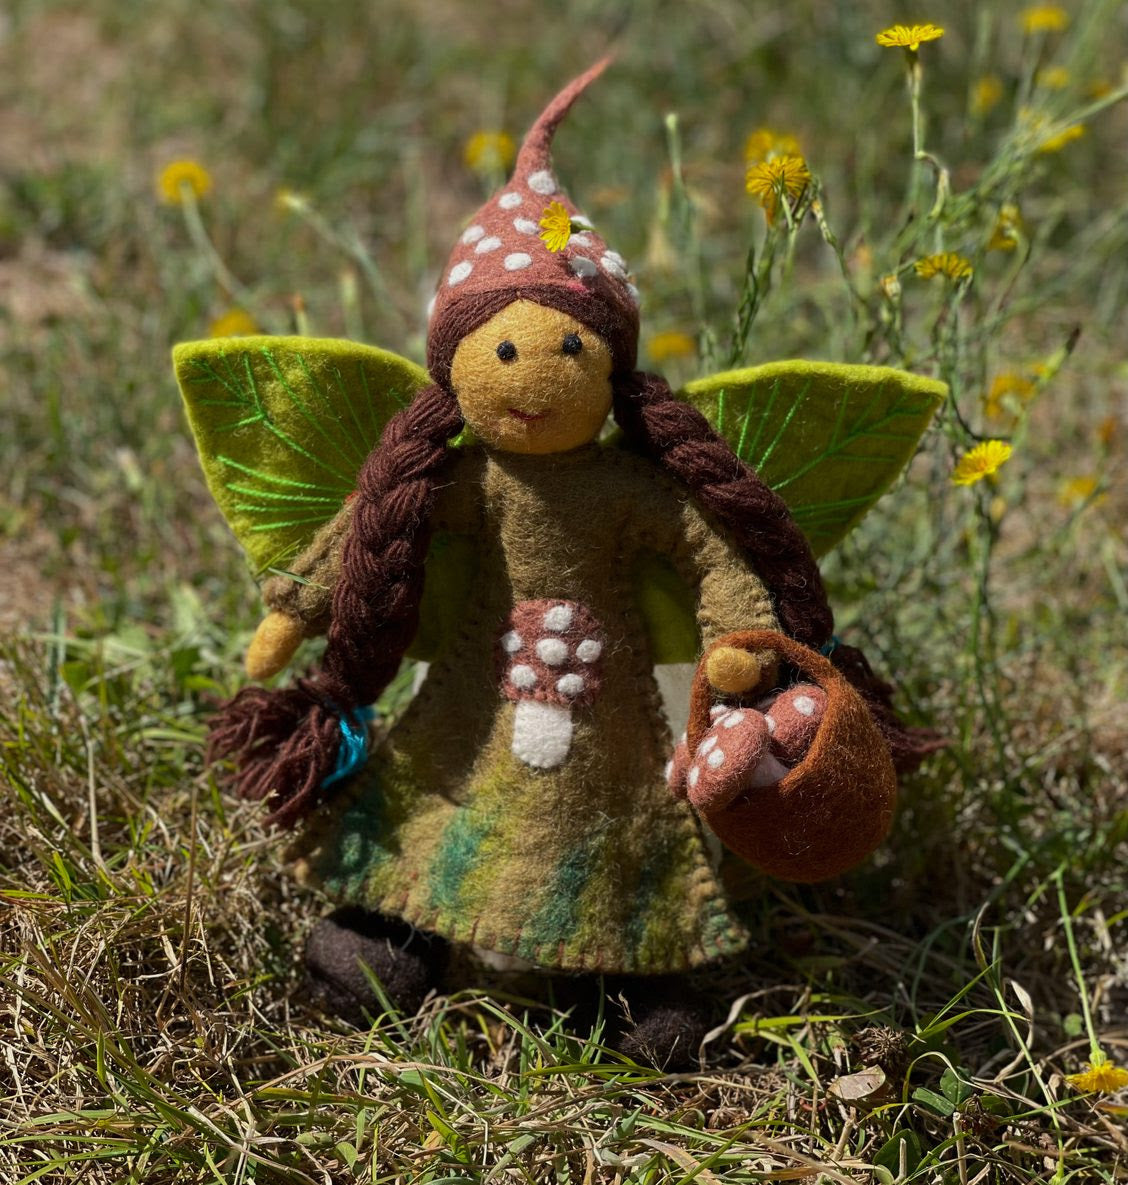 Elfie the Toadstool Fairy